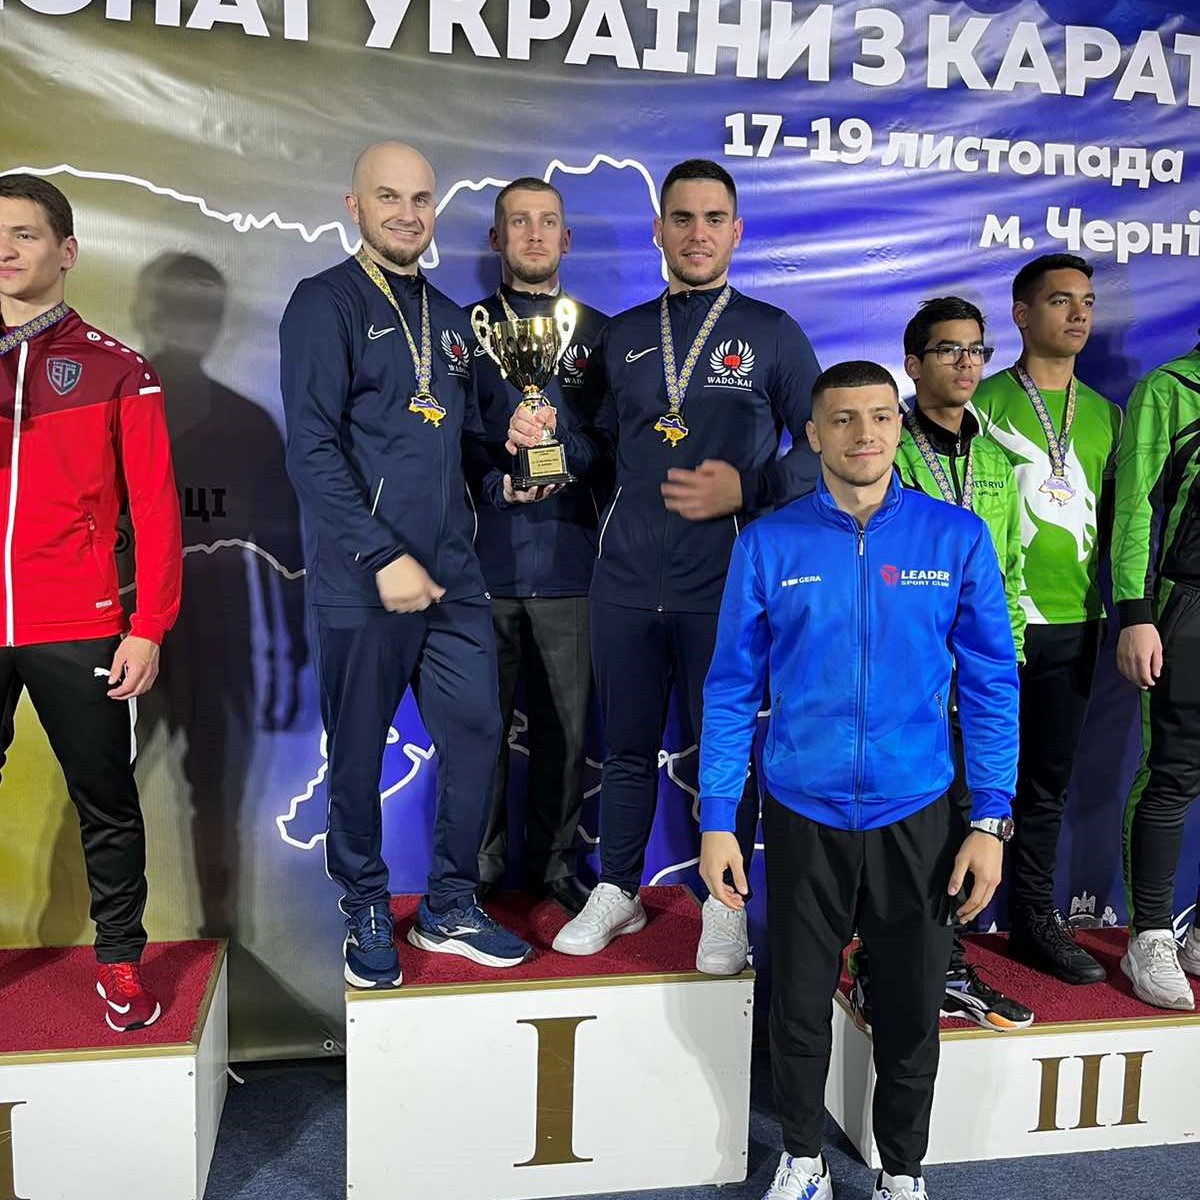 Викладач політехніки став золотим та бронзовим призером Чемпіонату України з карате серед дорослих